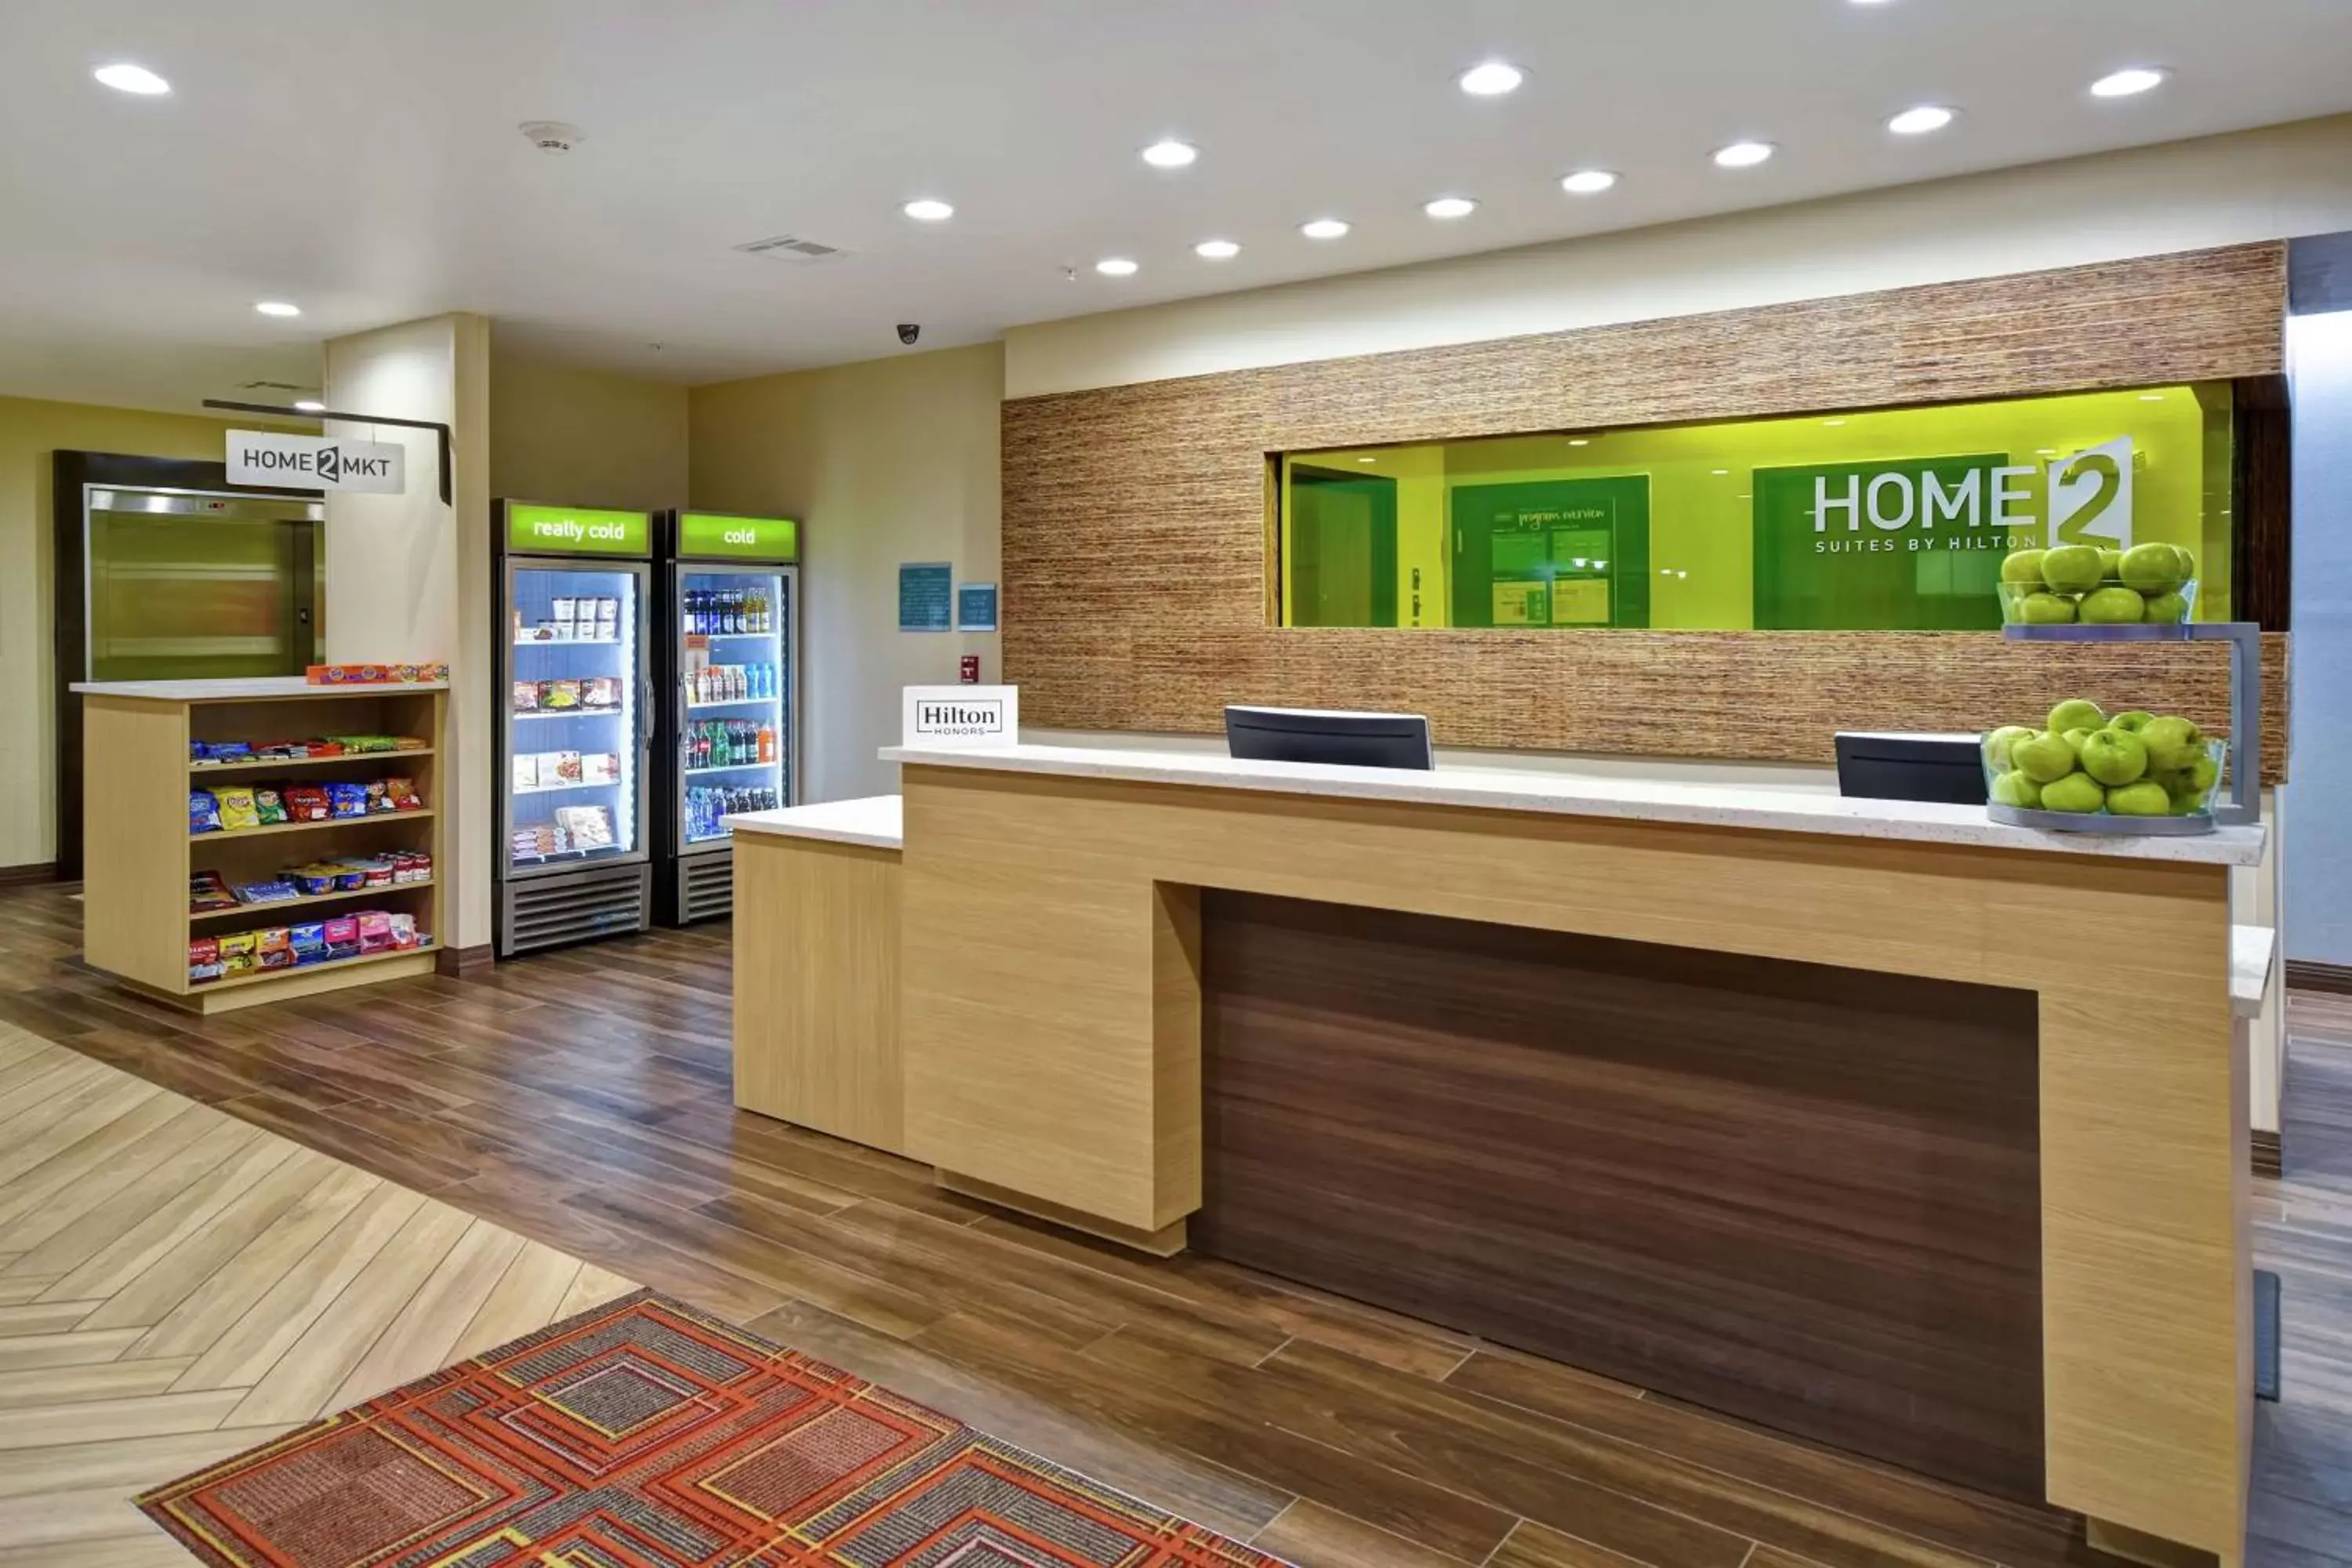 Lobby or reception, Lobby/Reception in Home2 Suites By Hilton El Reno